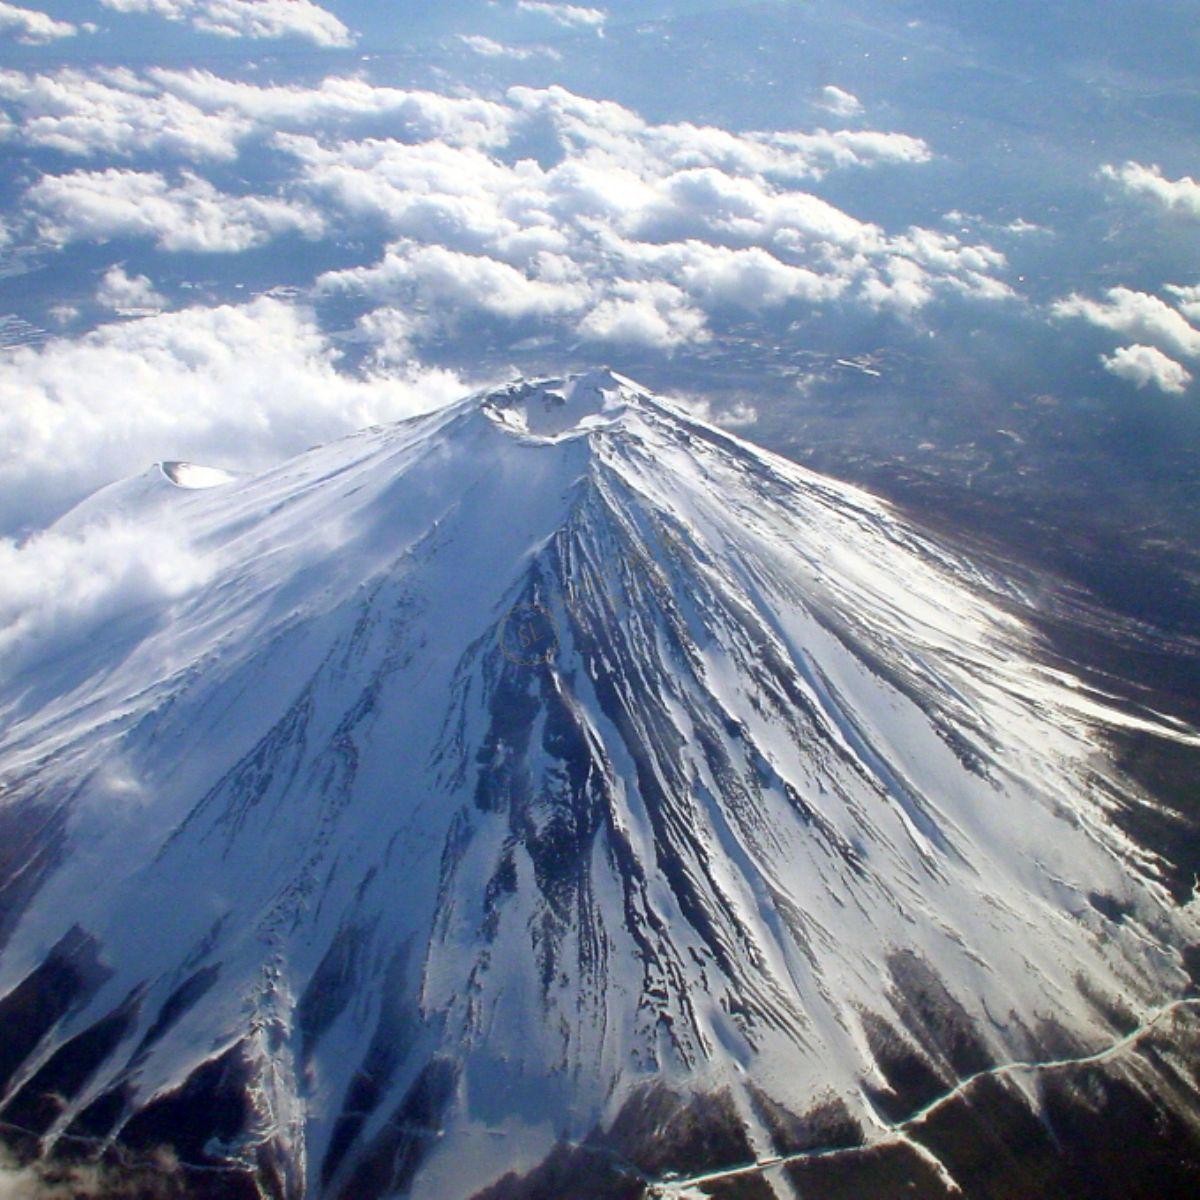 去富士山旅游 一年当中最佳时间是哪个月份 第六感度假